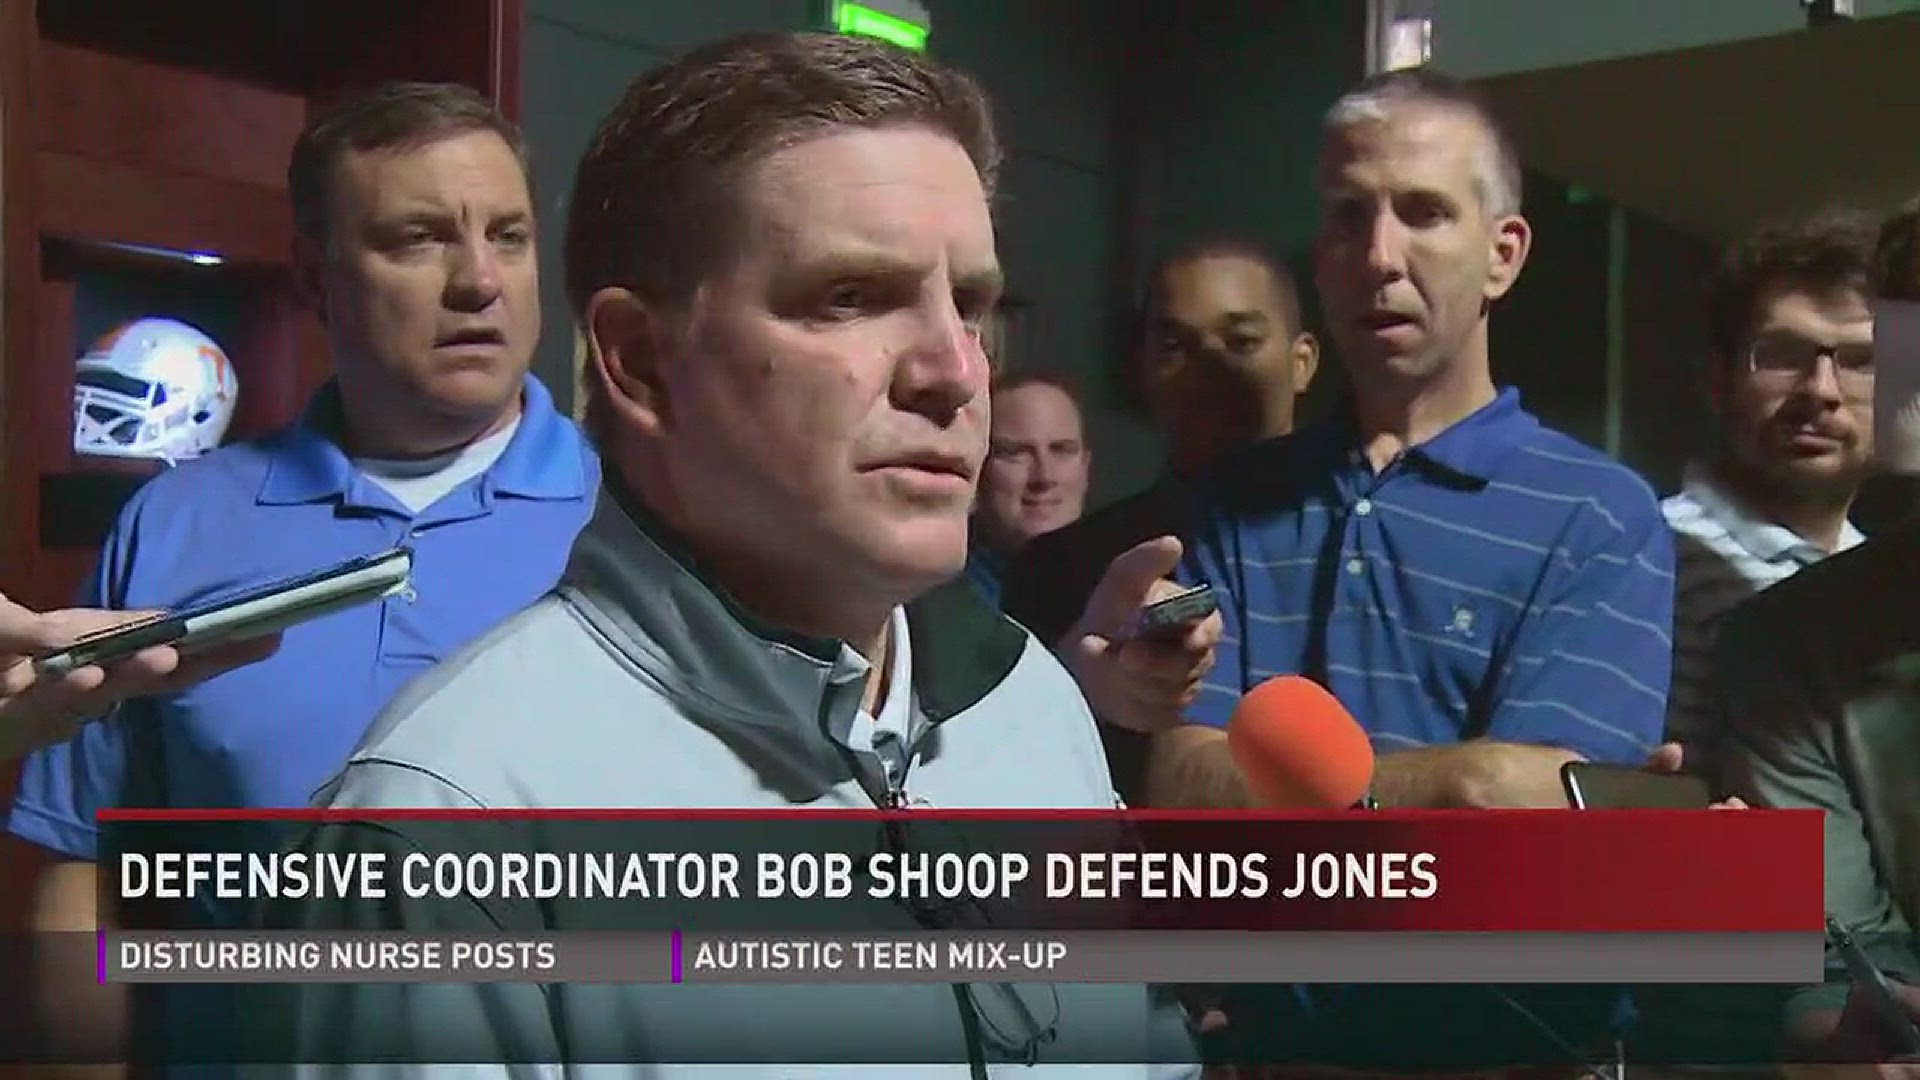 Vols defensive coordinator Bob Shoop defends head coach Butch Jones after loss to Florida.